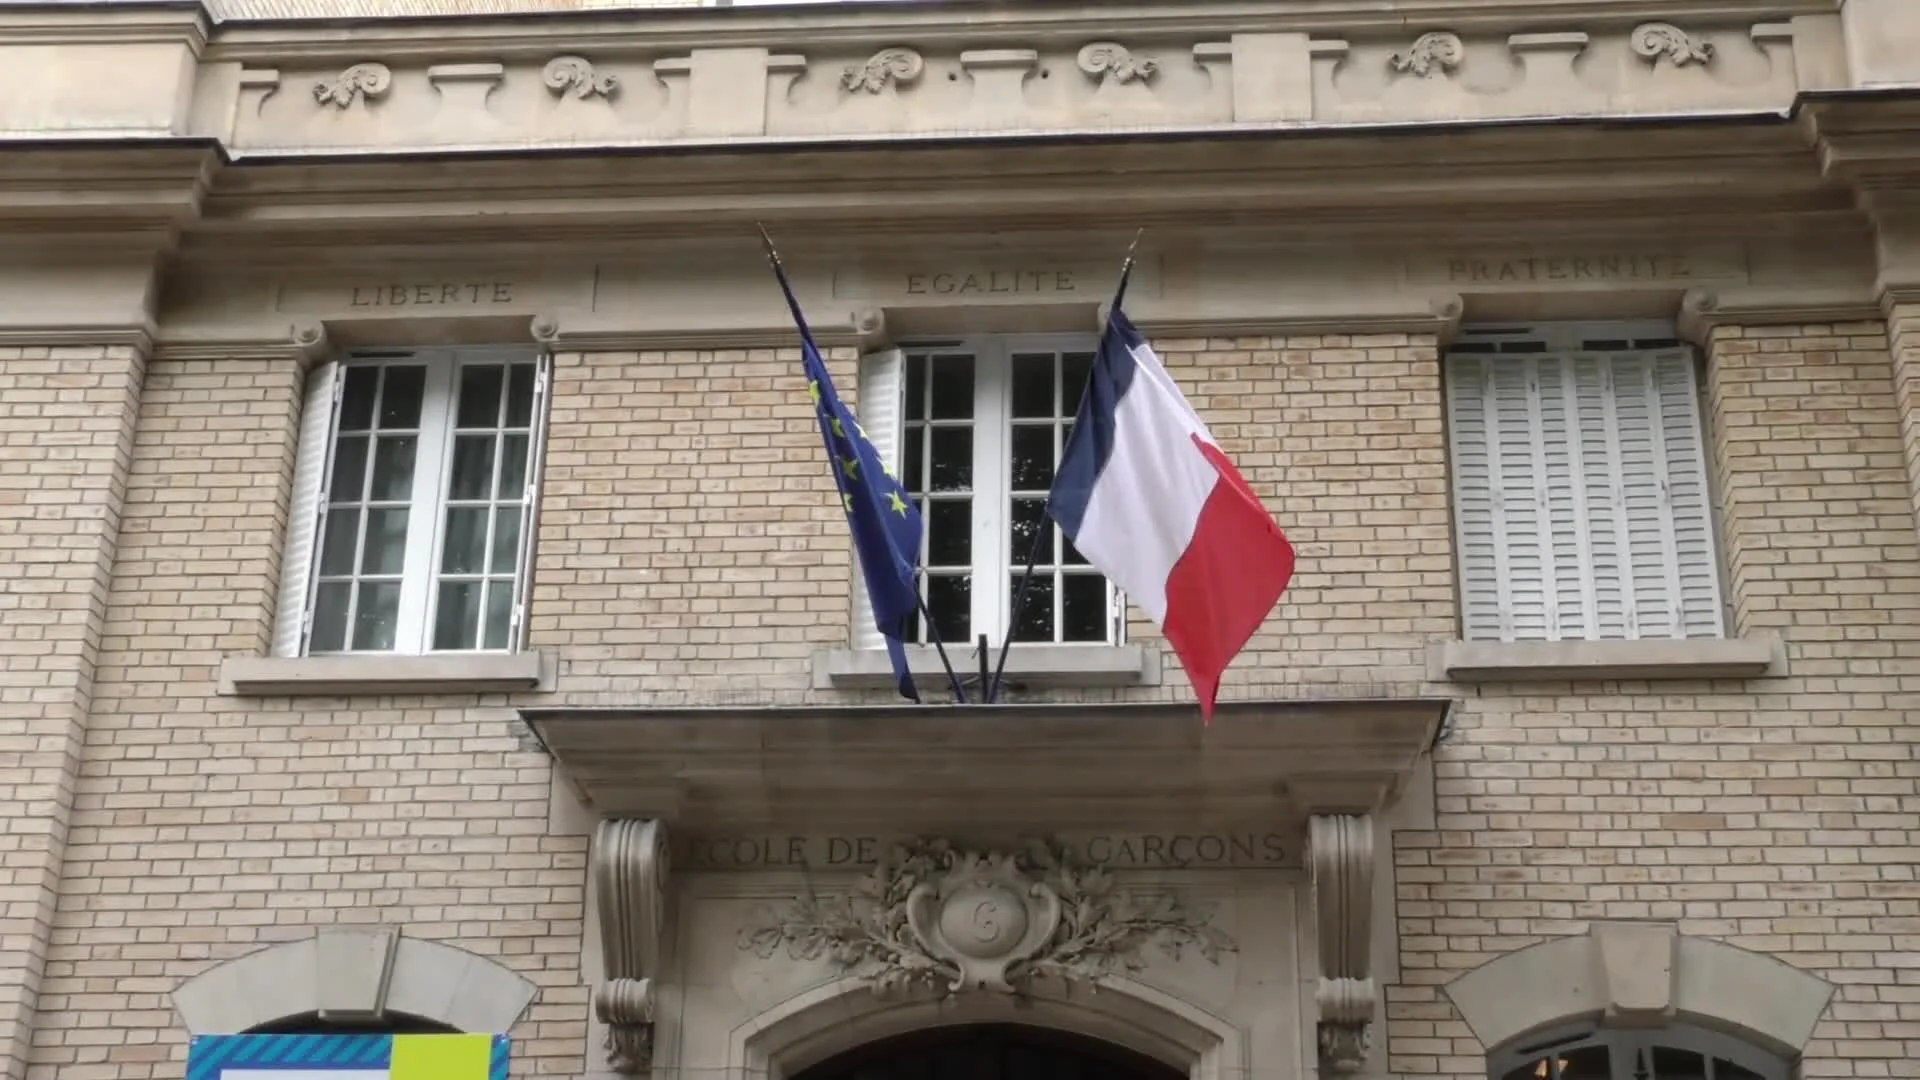 ฝรั่งเศสเตรียมแบนสวม 'ชุดอาบายะห์' ในโรงเรียน